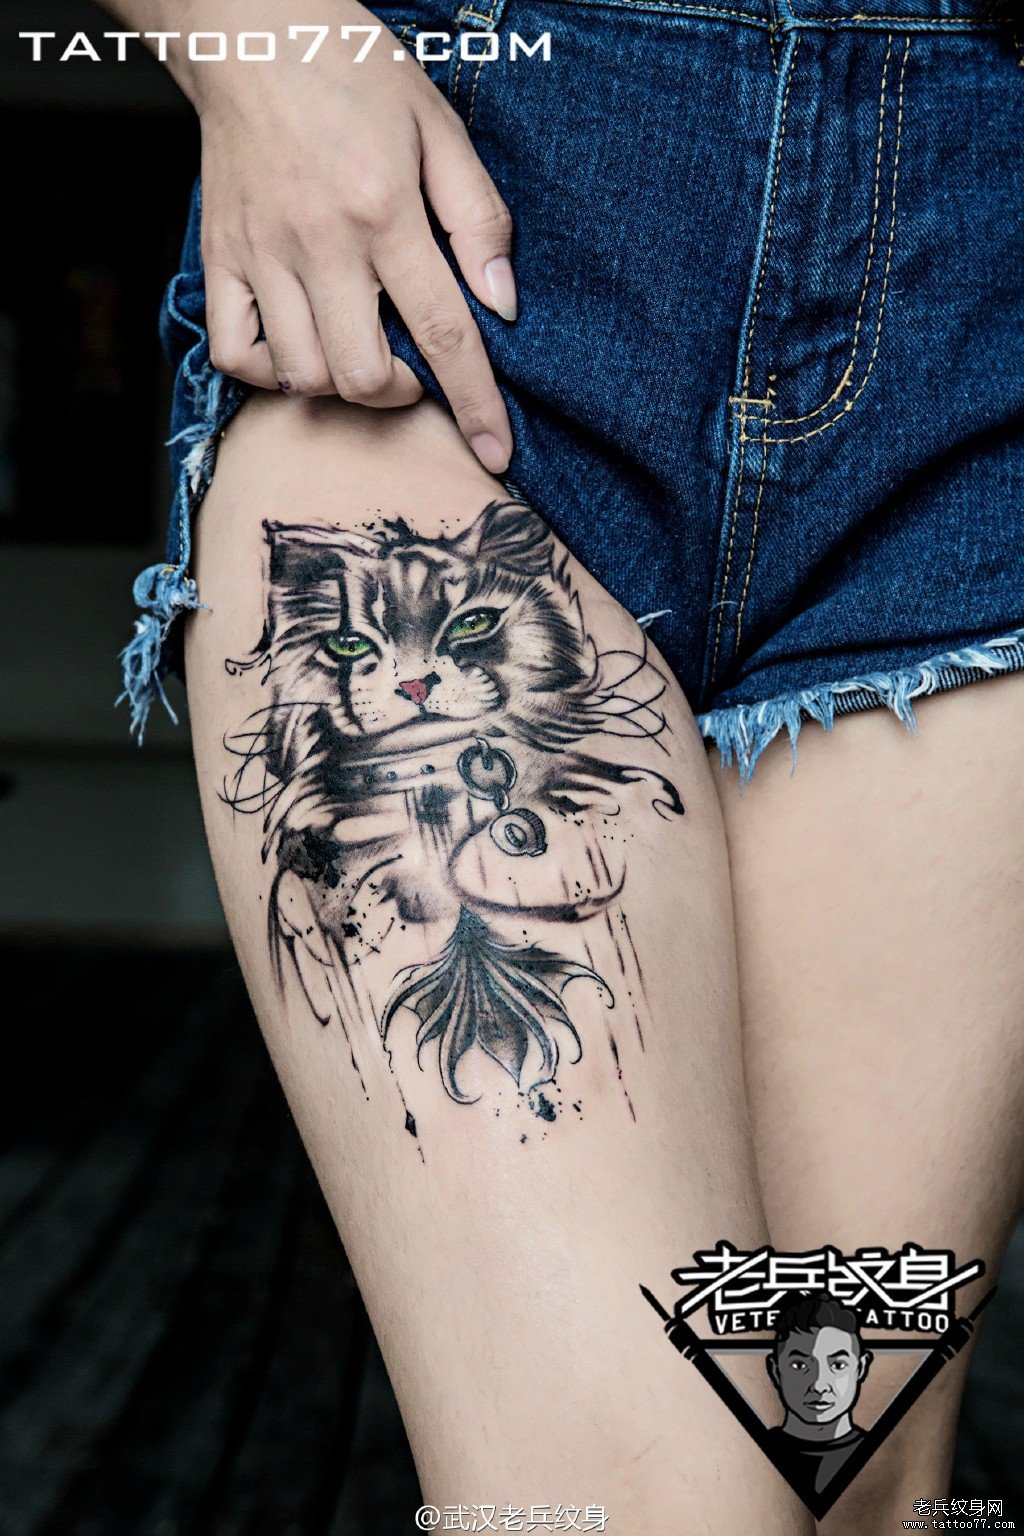 大腿猫刺青图案作品